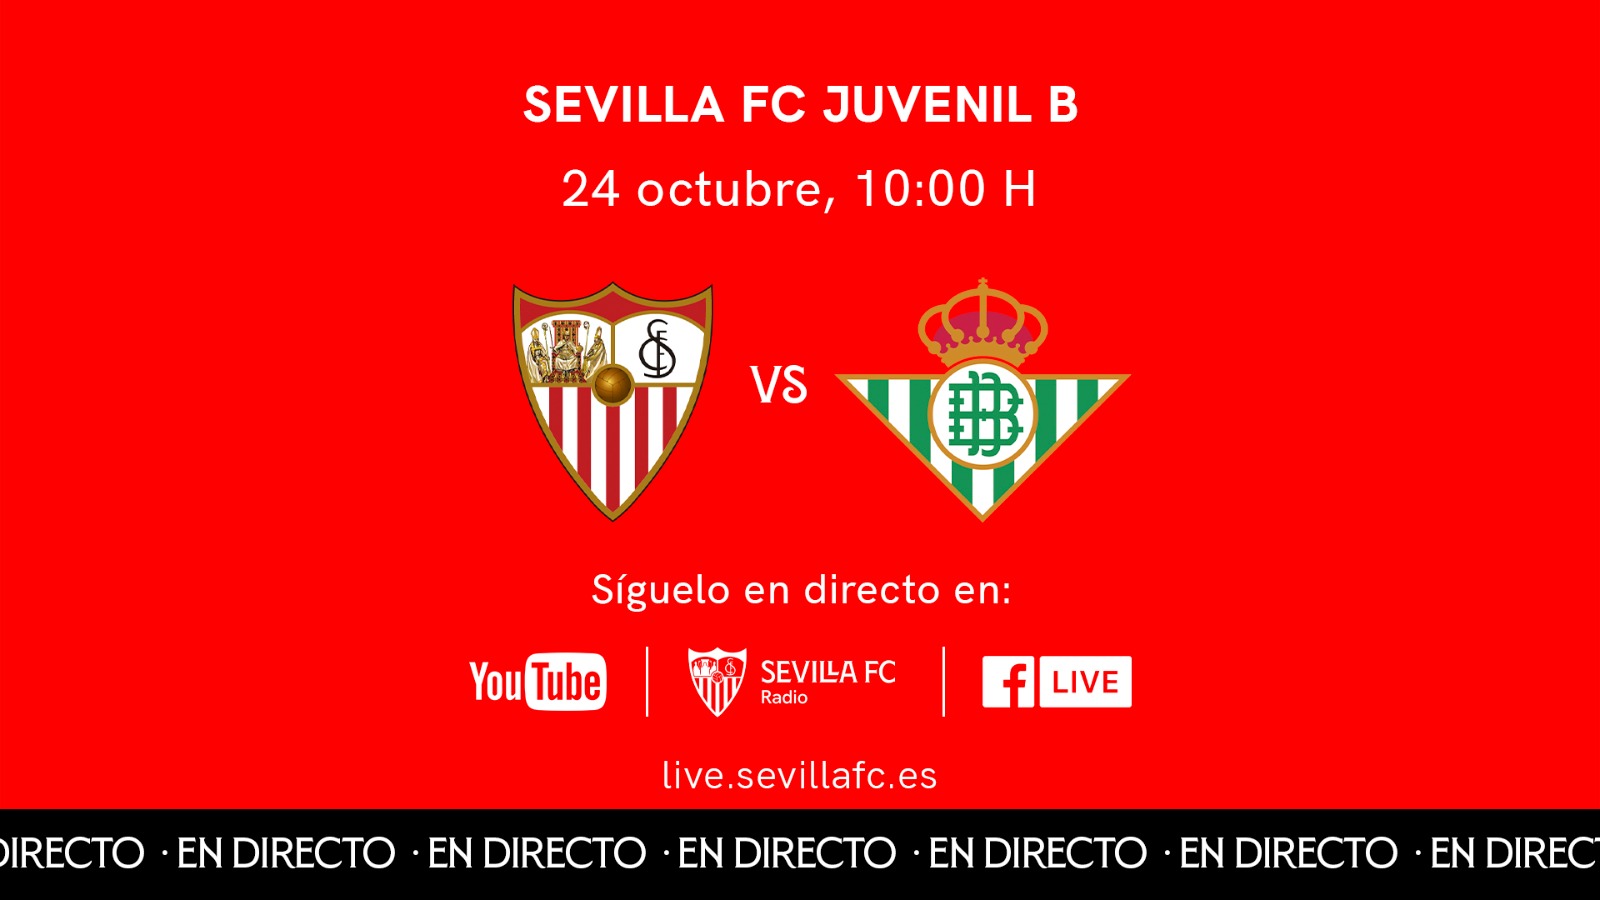 Derbi de Liga Nacional Juvenil en Sevilla FC TV